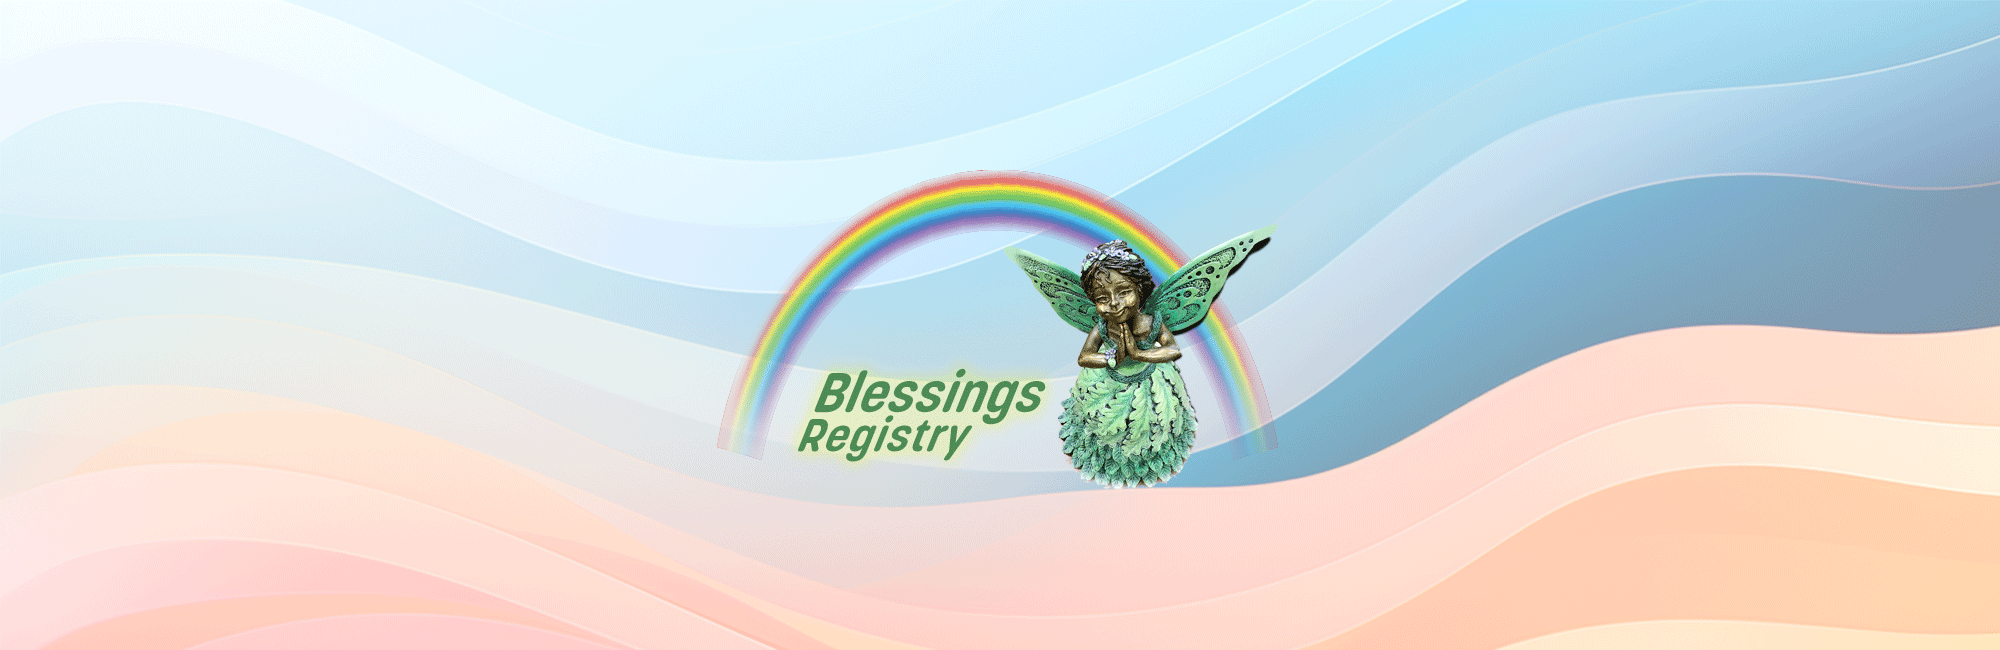 Blessings Registry